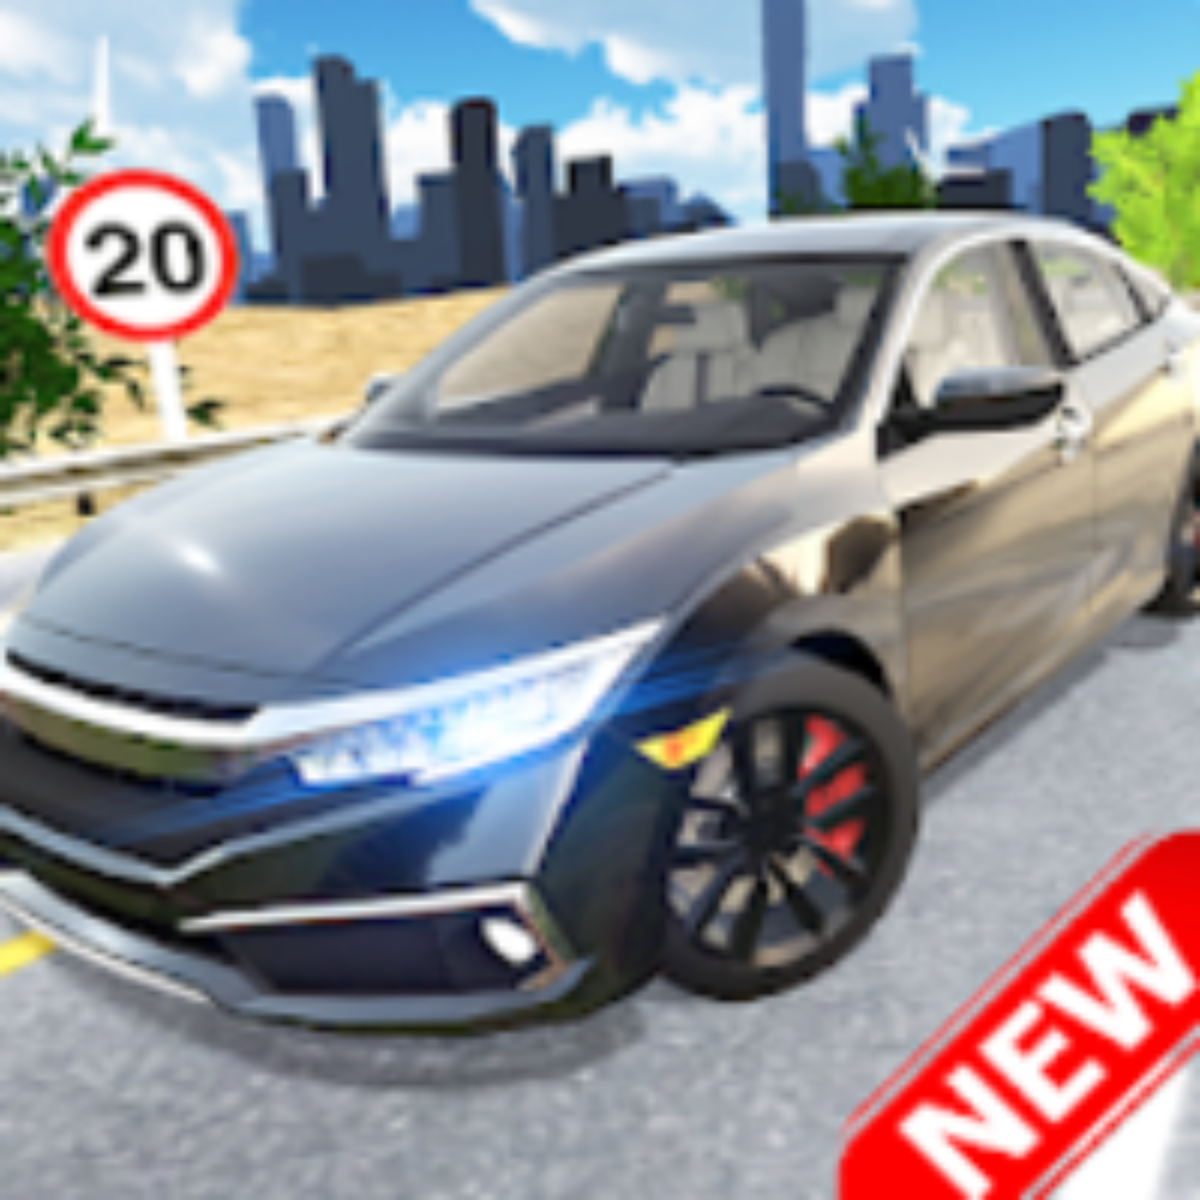 Ultimate Car Driving Simulator v7.3.1 Apk Mod (Dinheiro Infinito